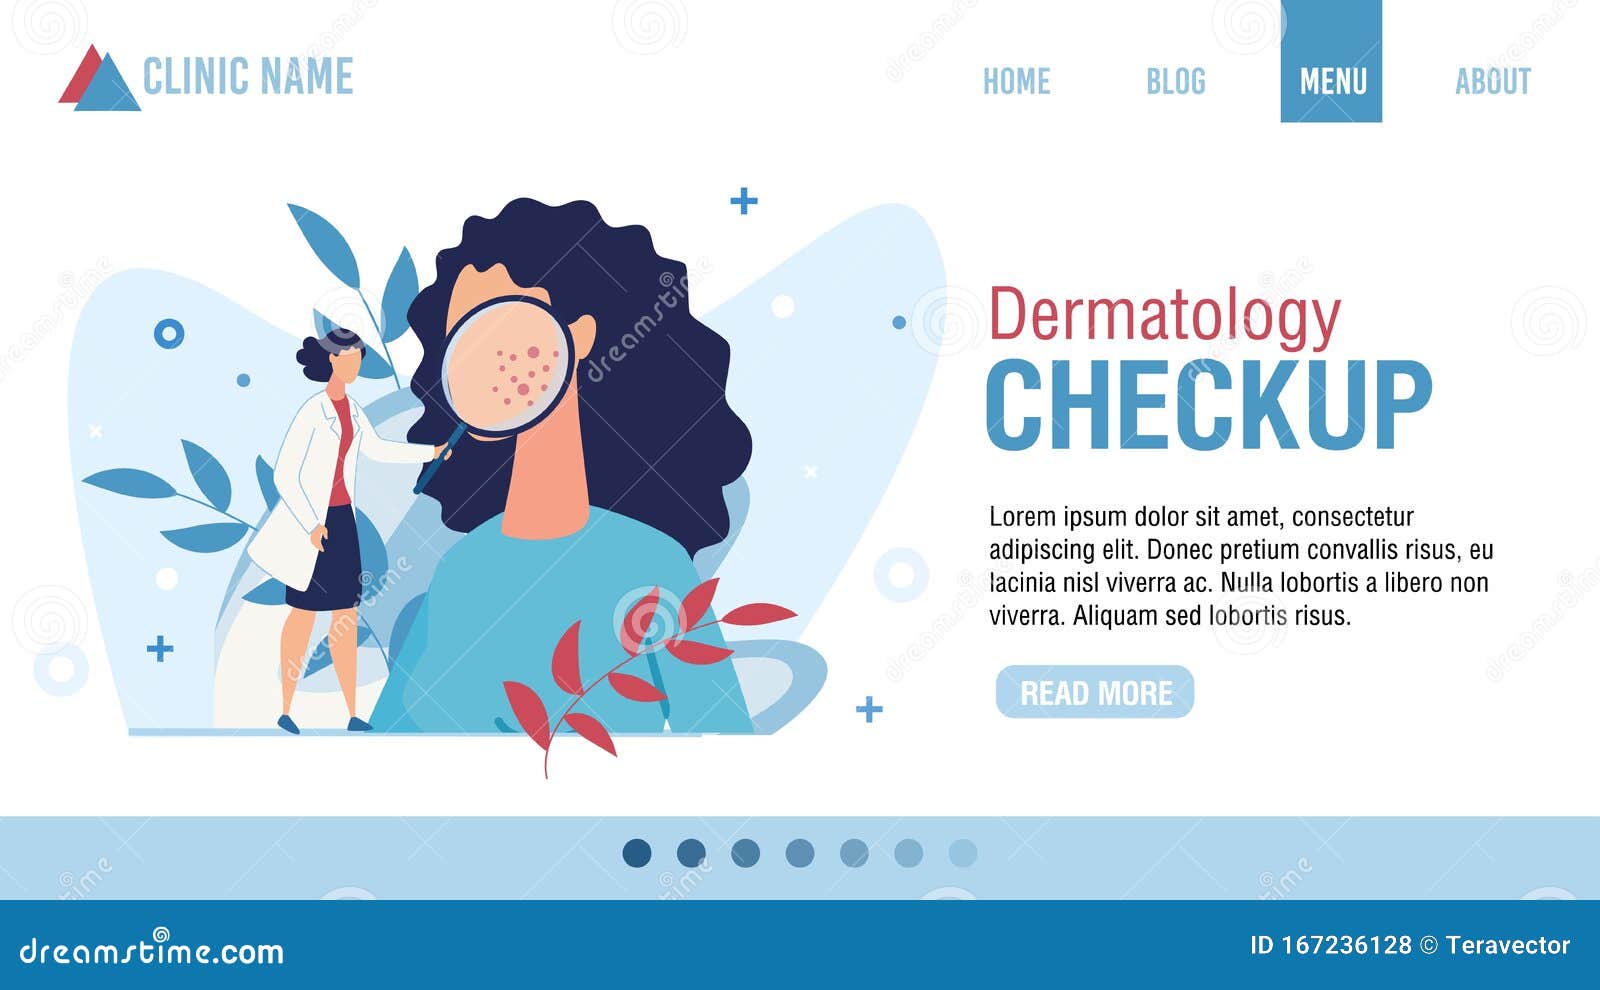 flat landing page advertising dermatology checkup